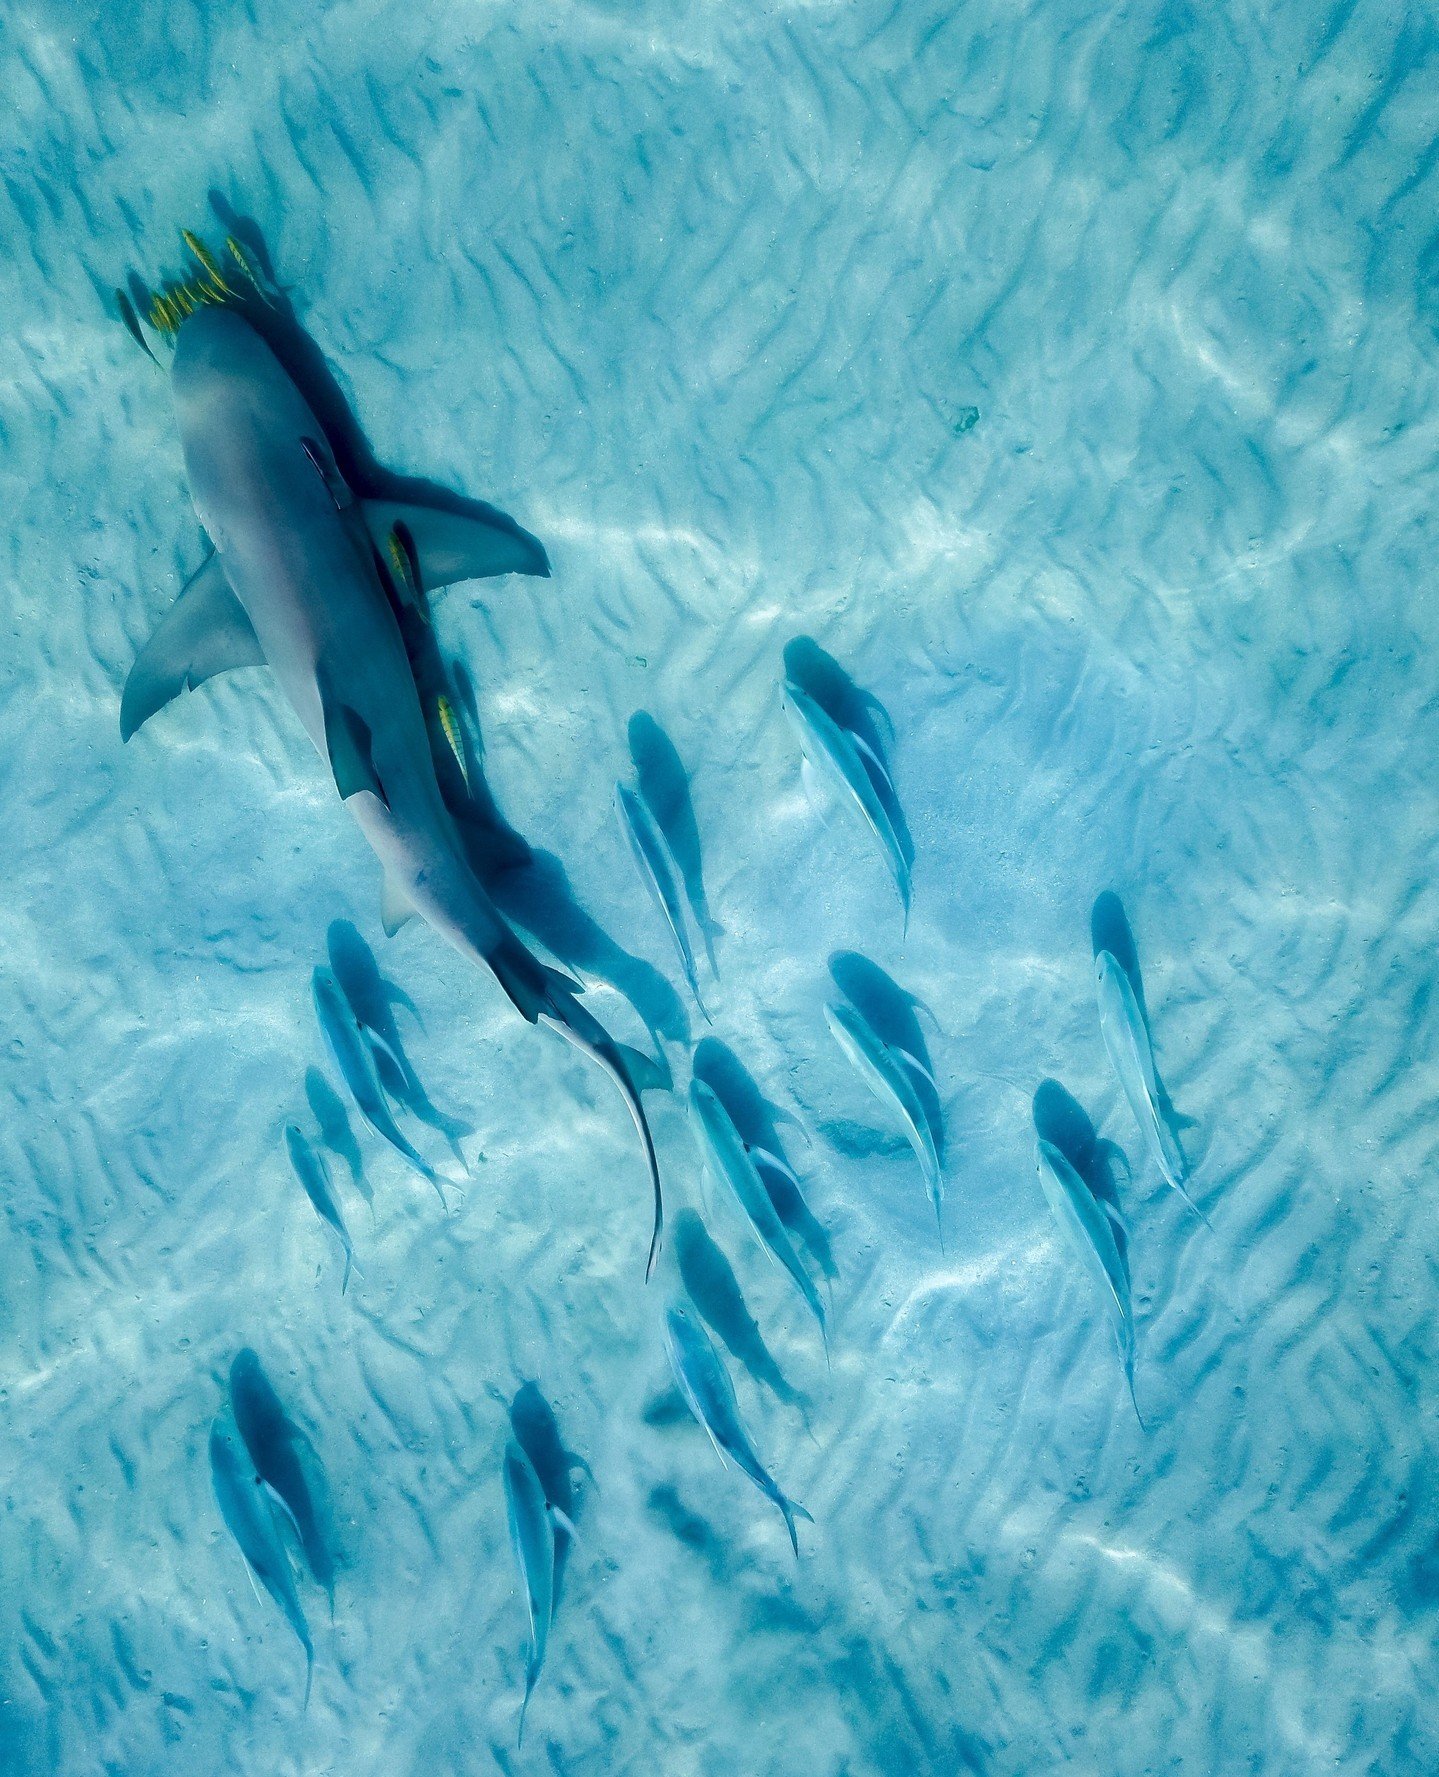 Bundegi Mangroves - Lemon Shark⁠